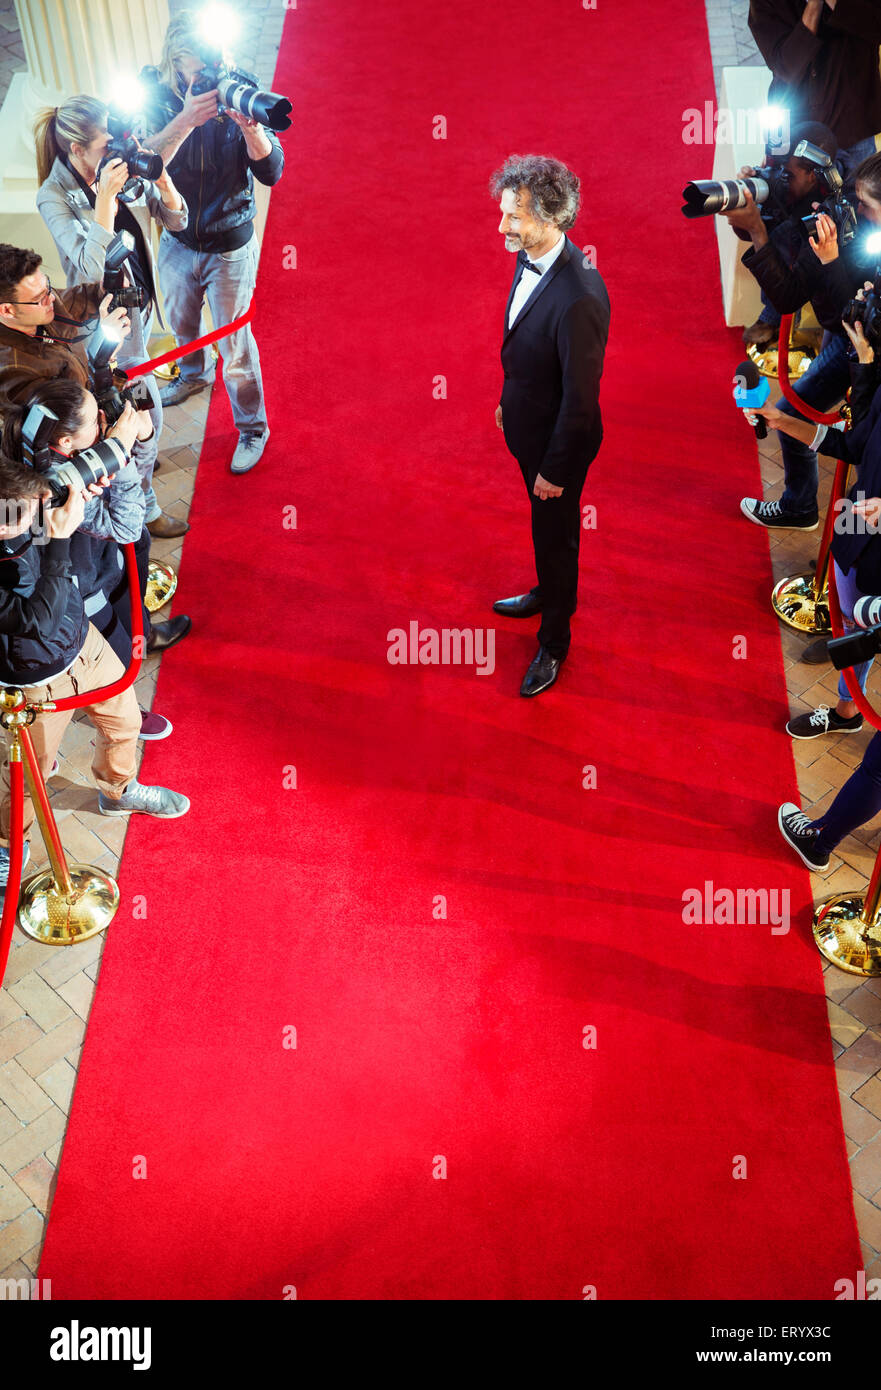 Promi, fotografiert von Paparazzi-Fotografen am roten Teppich Stockfoto